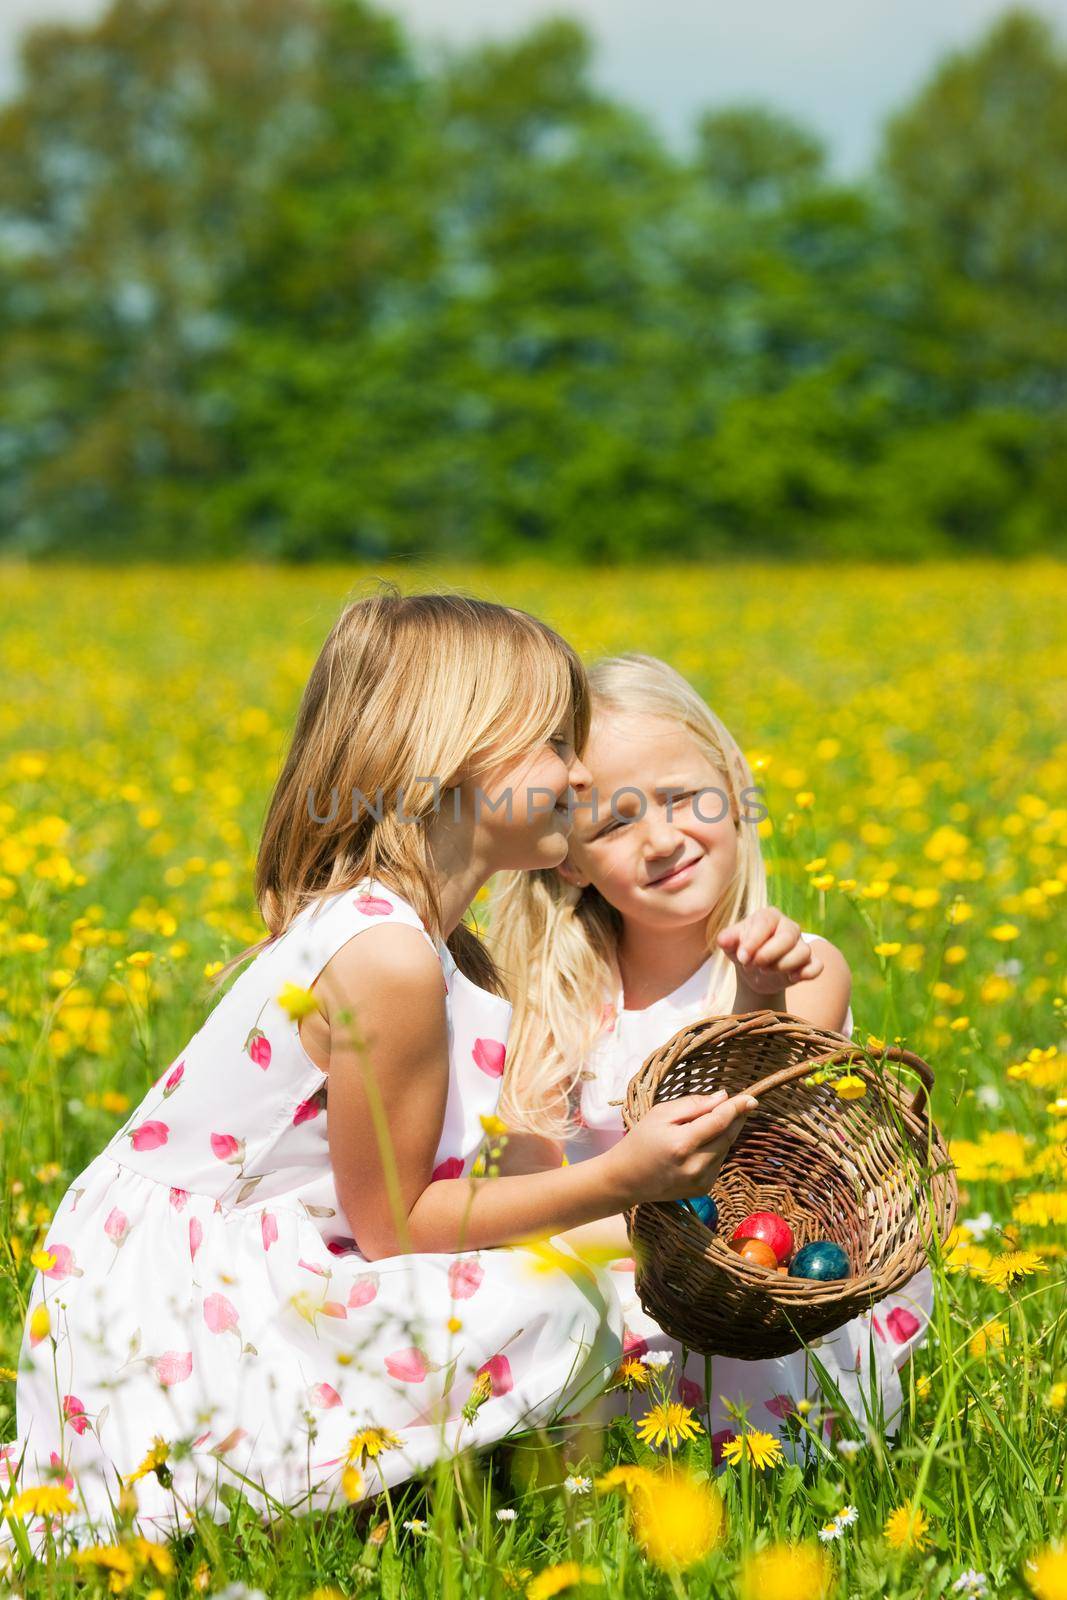 Children on Easter egg hunt with eggs by Kzenon